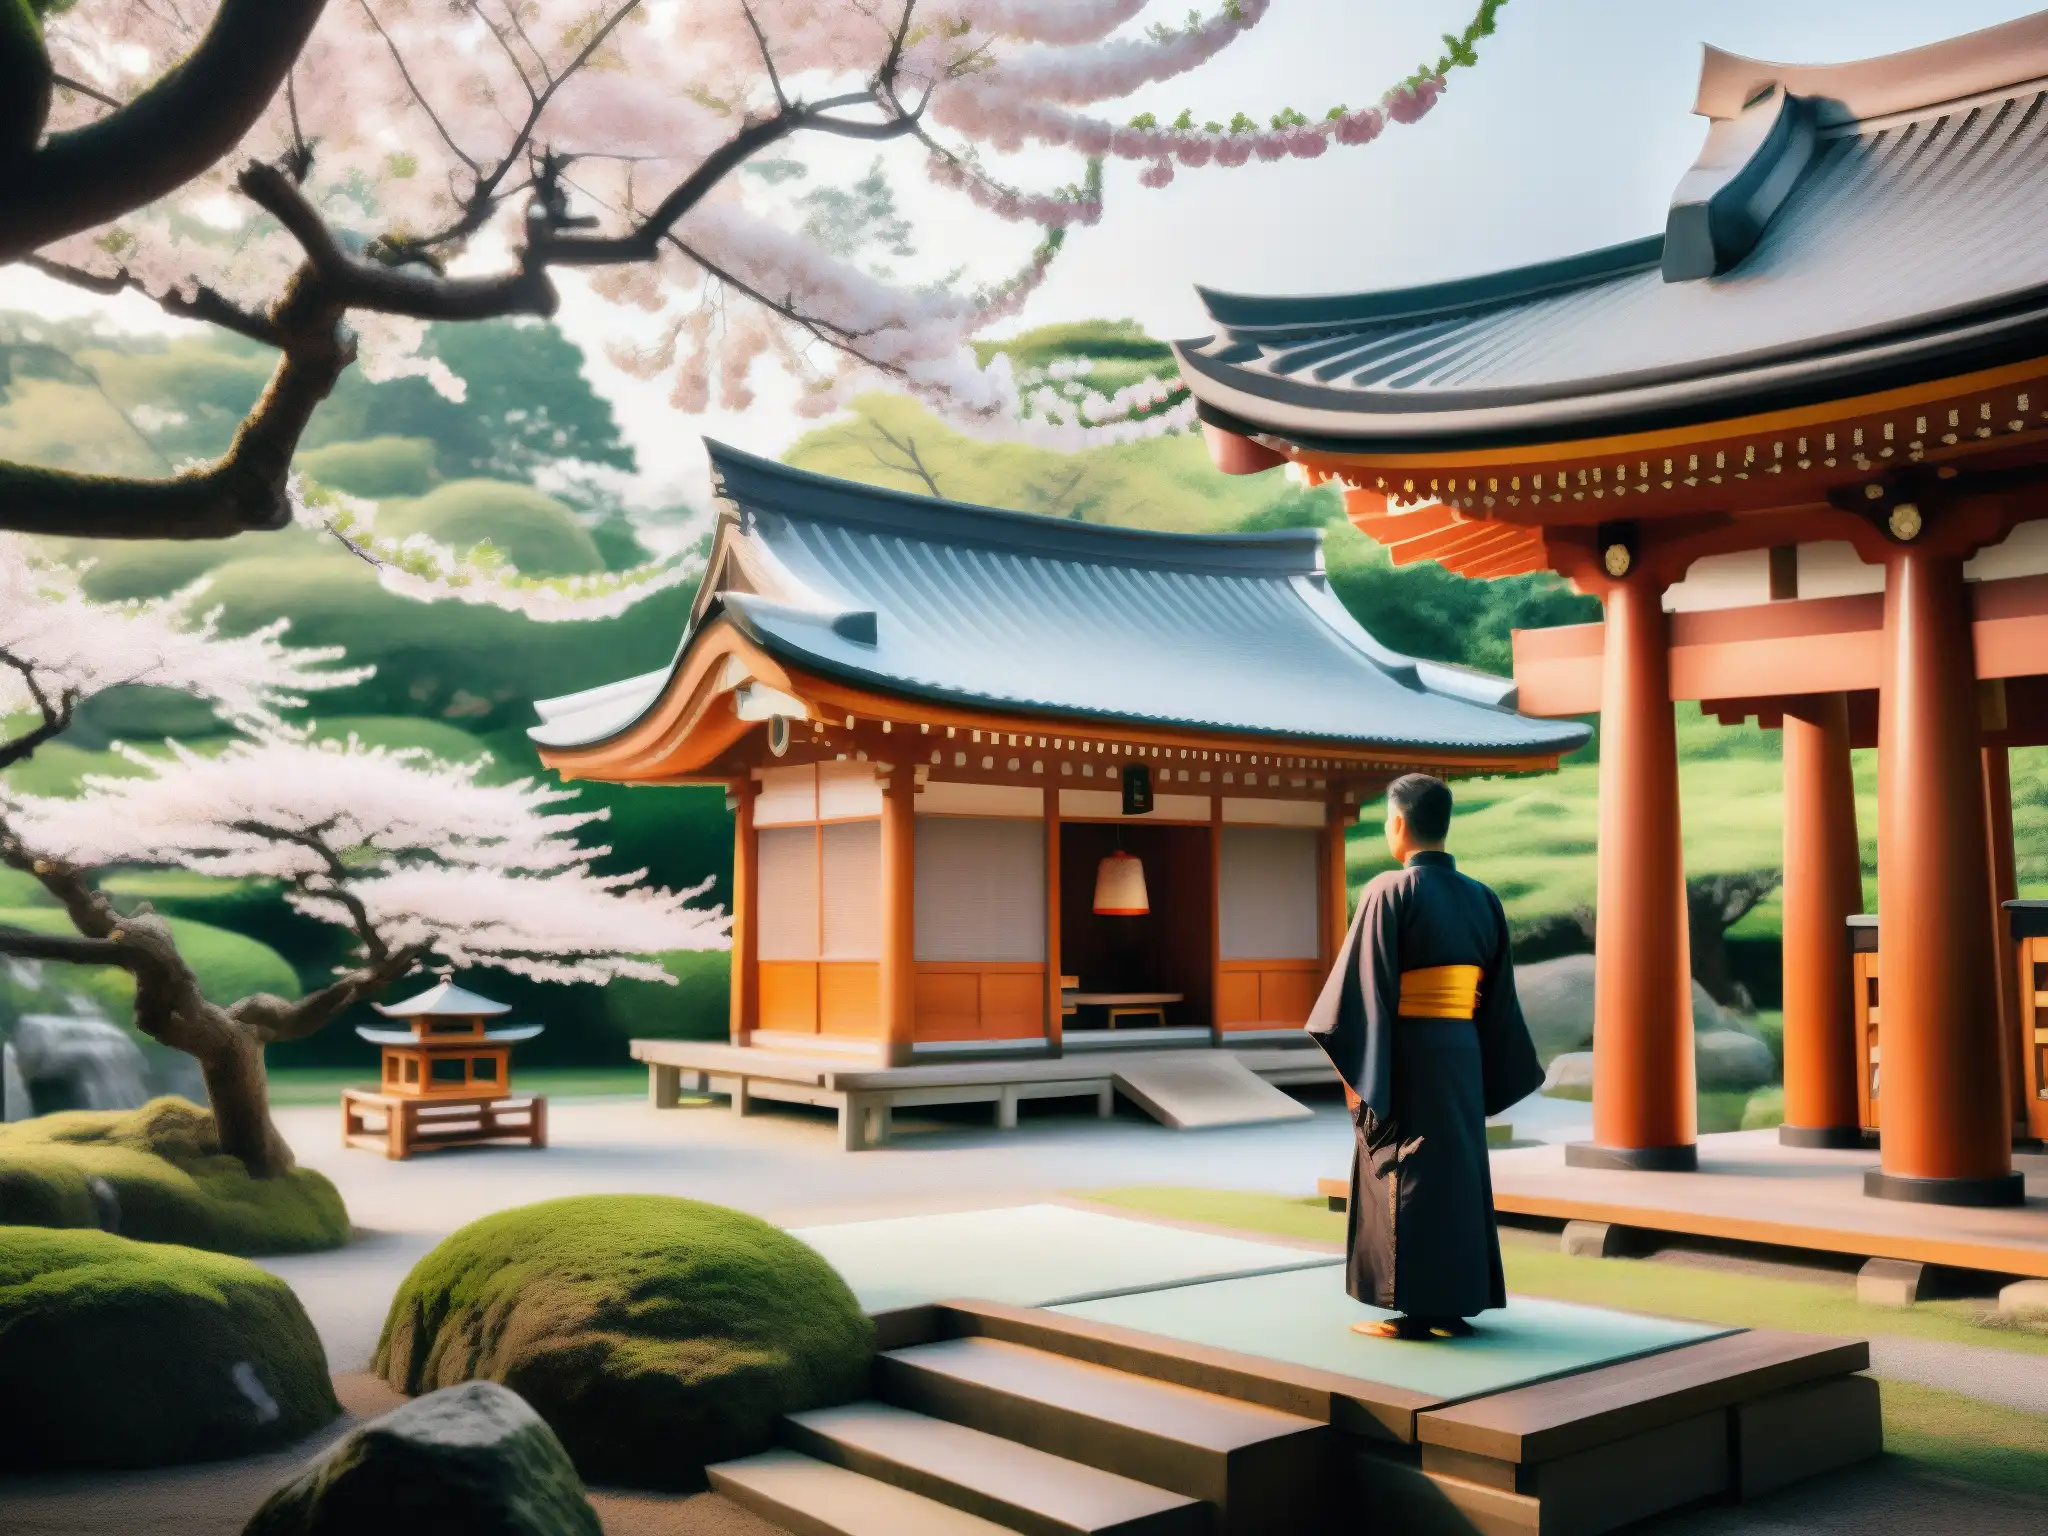 Un santuario japonés con arquitectura de madera rodeado de naturaleza exuberante y espíritus servidores en el ocultismo japonés